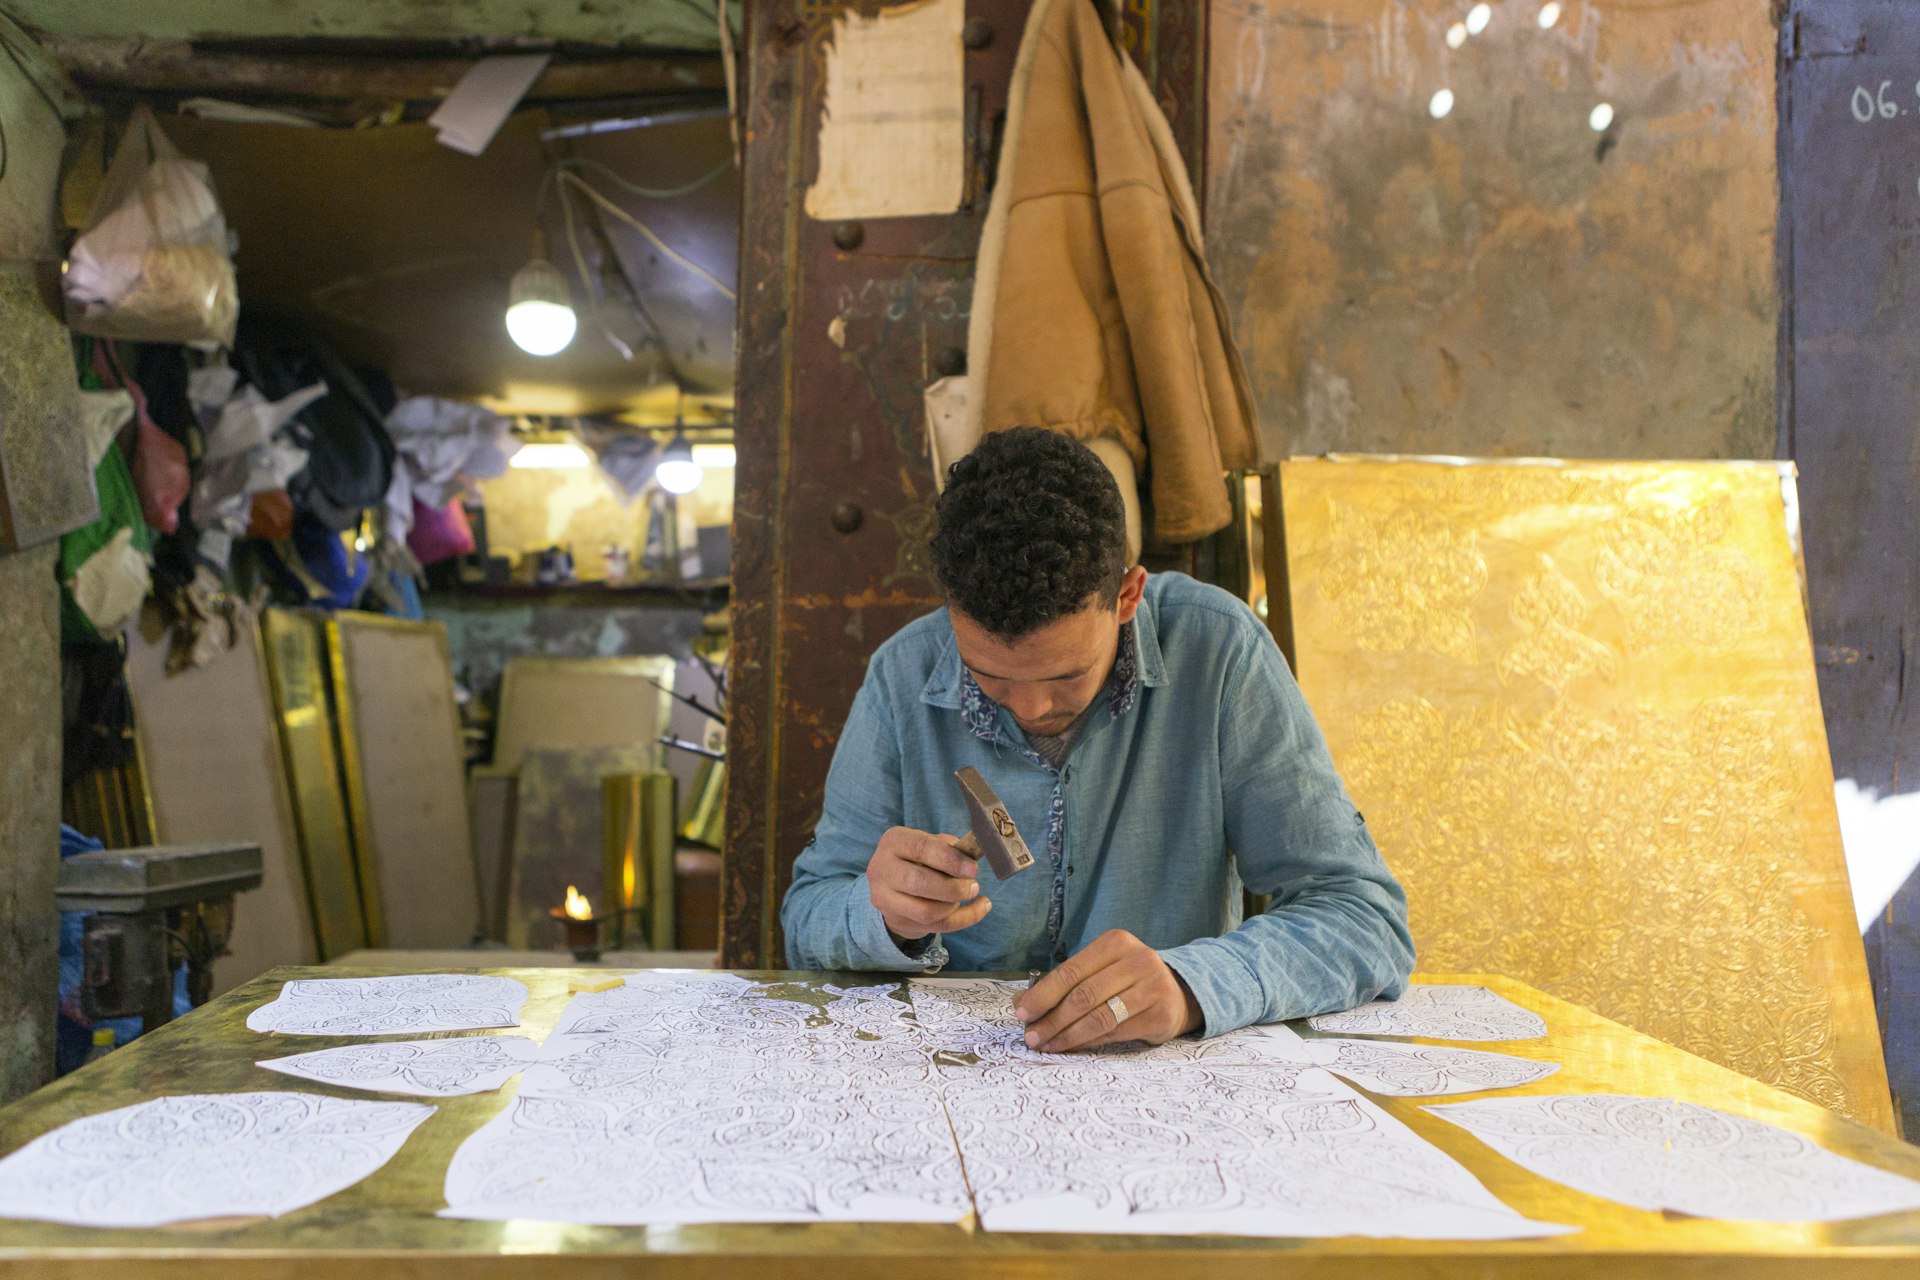 Metal artisan working in Marrakesh market, Morocco